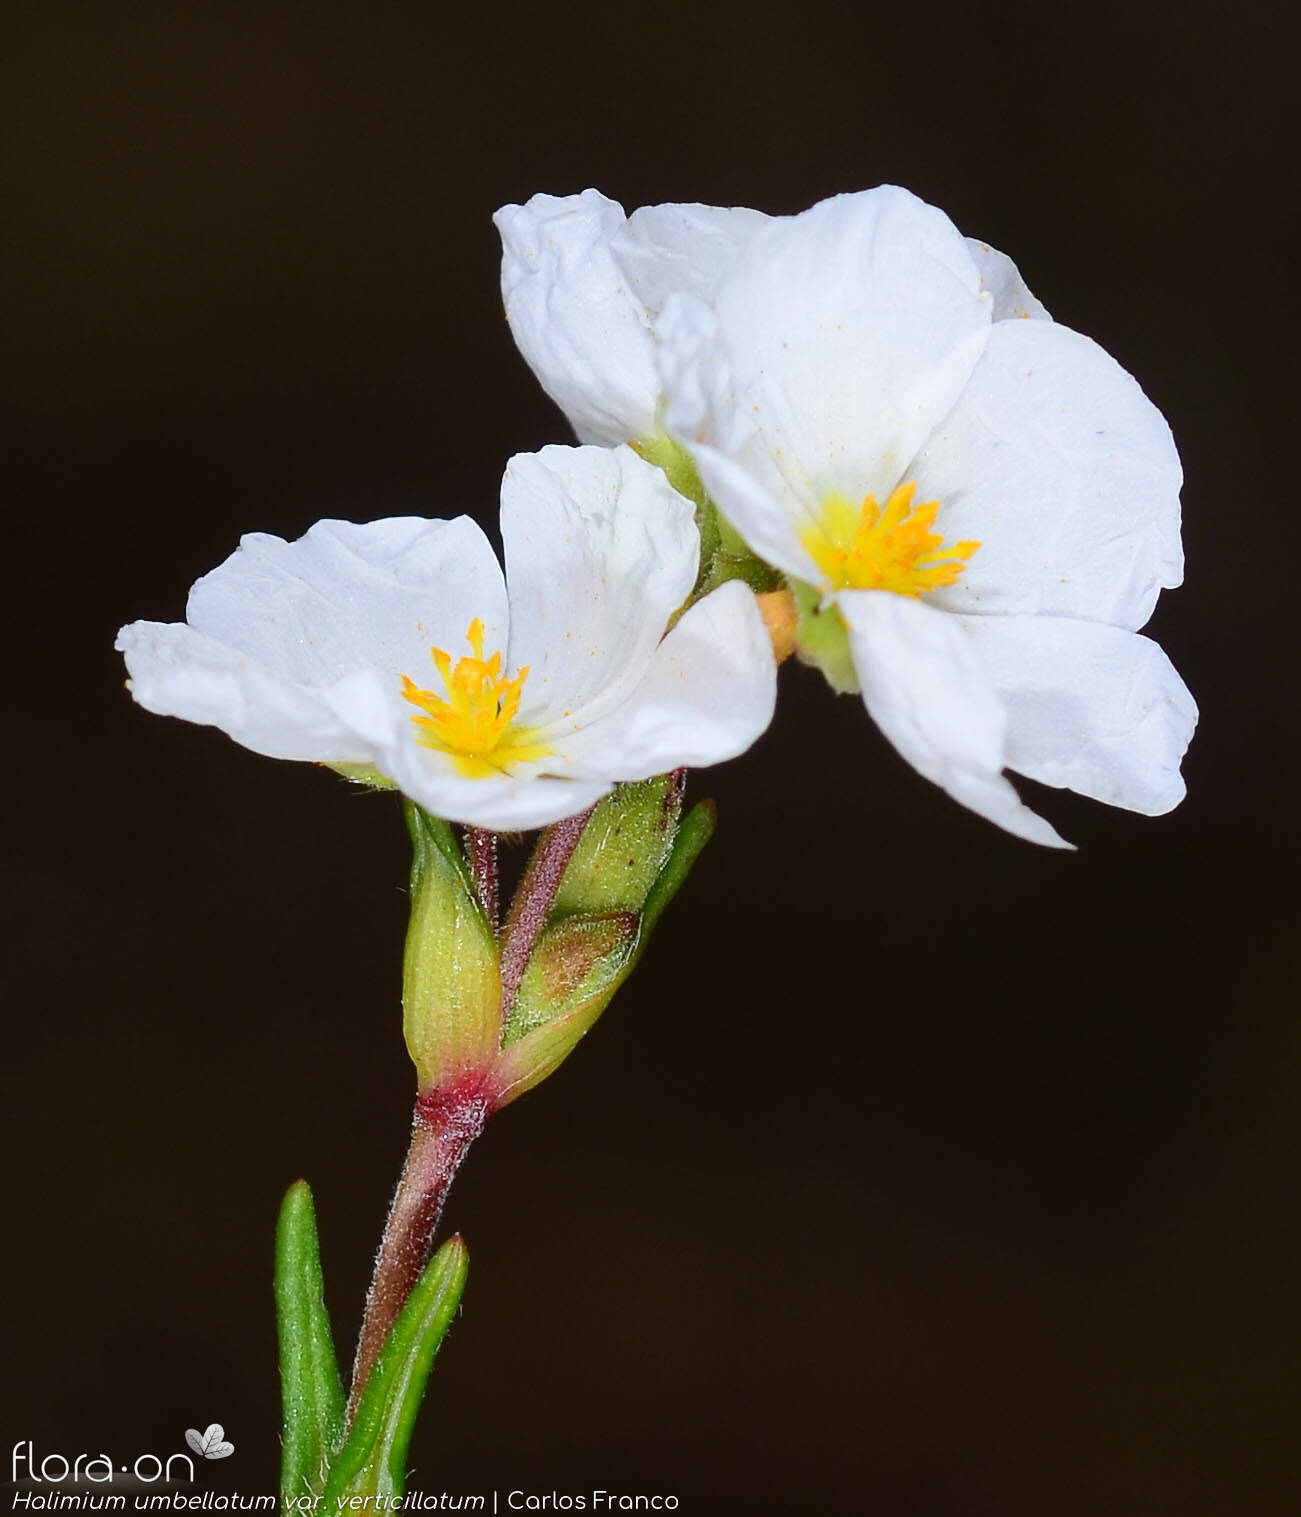 Halimium umbellatum - Flor (close-up) | Carlos Franco; CC BY-NC 4.0